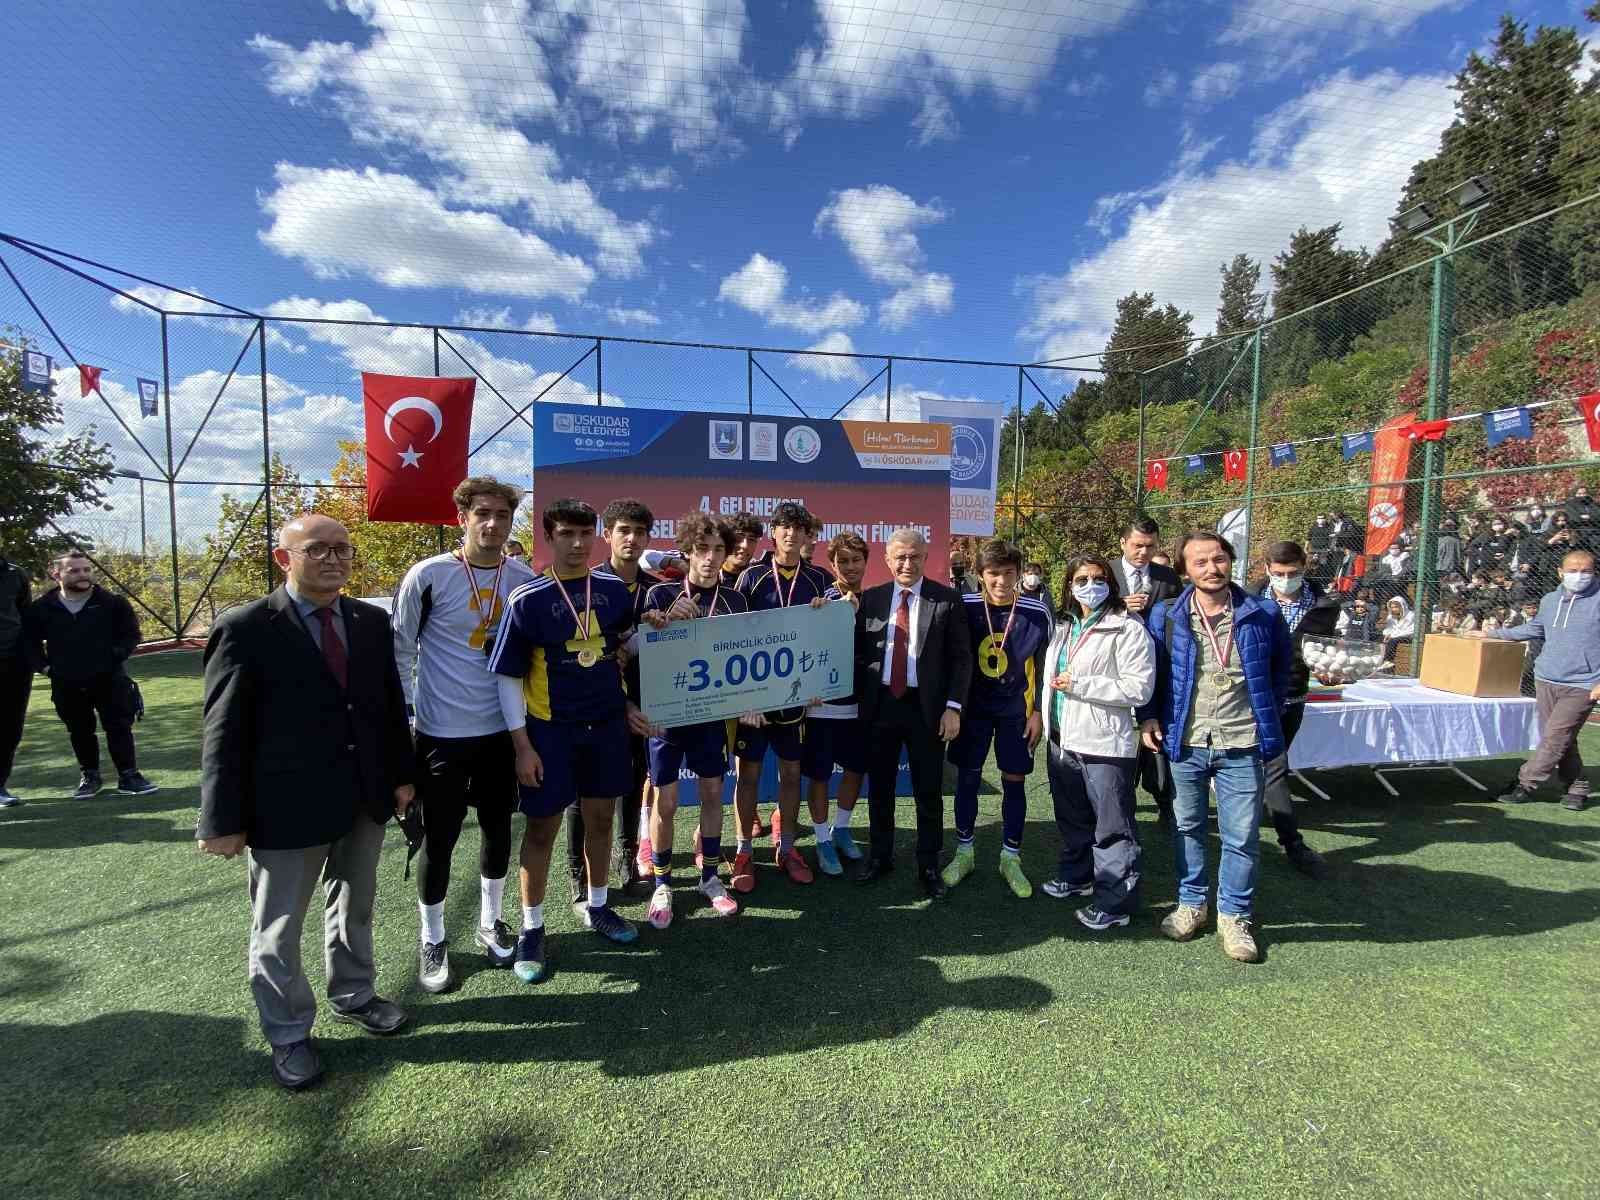 Üsküdar’da liseler arası turnuvanın şampiyonu belli oldu #istanbul